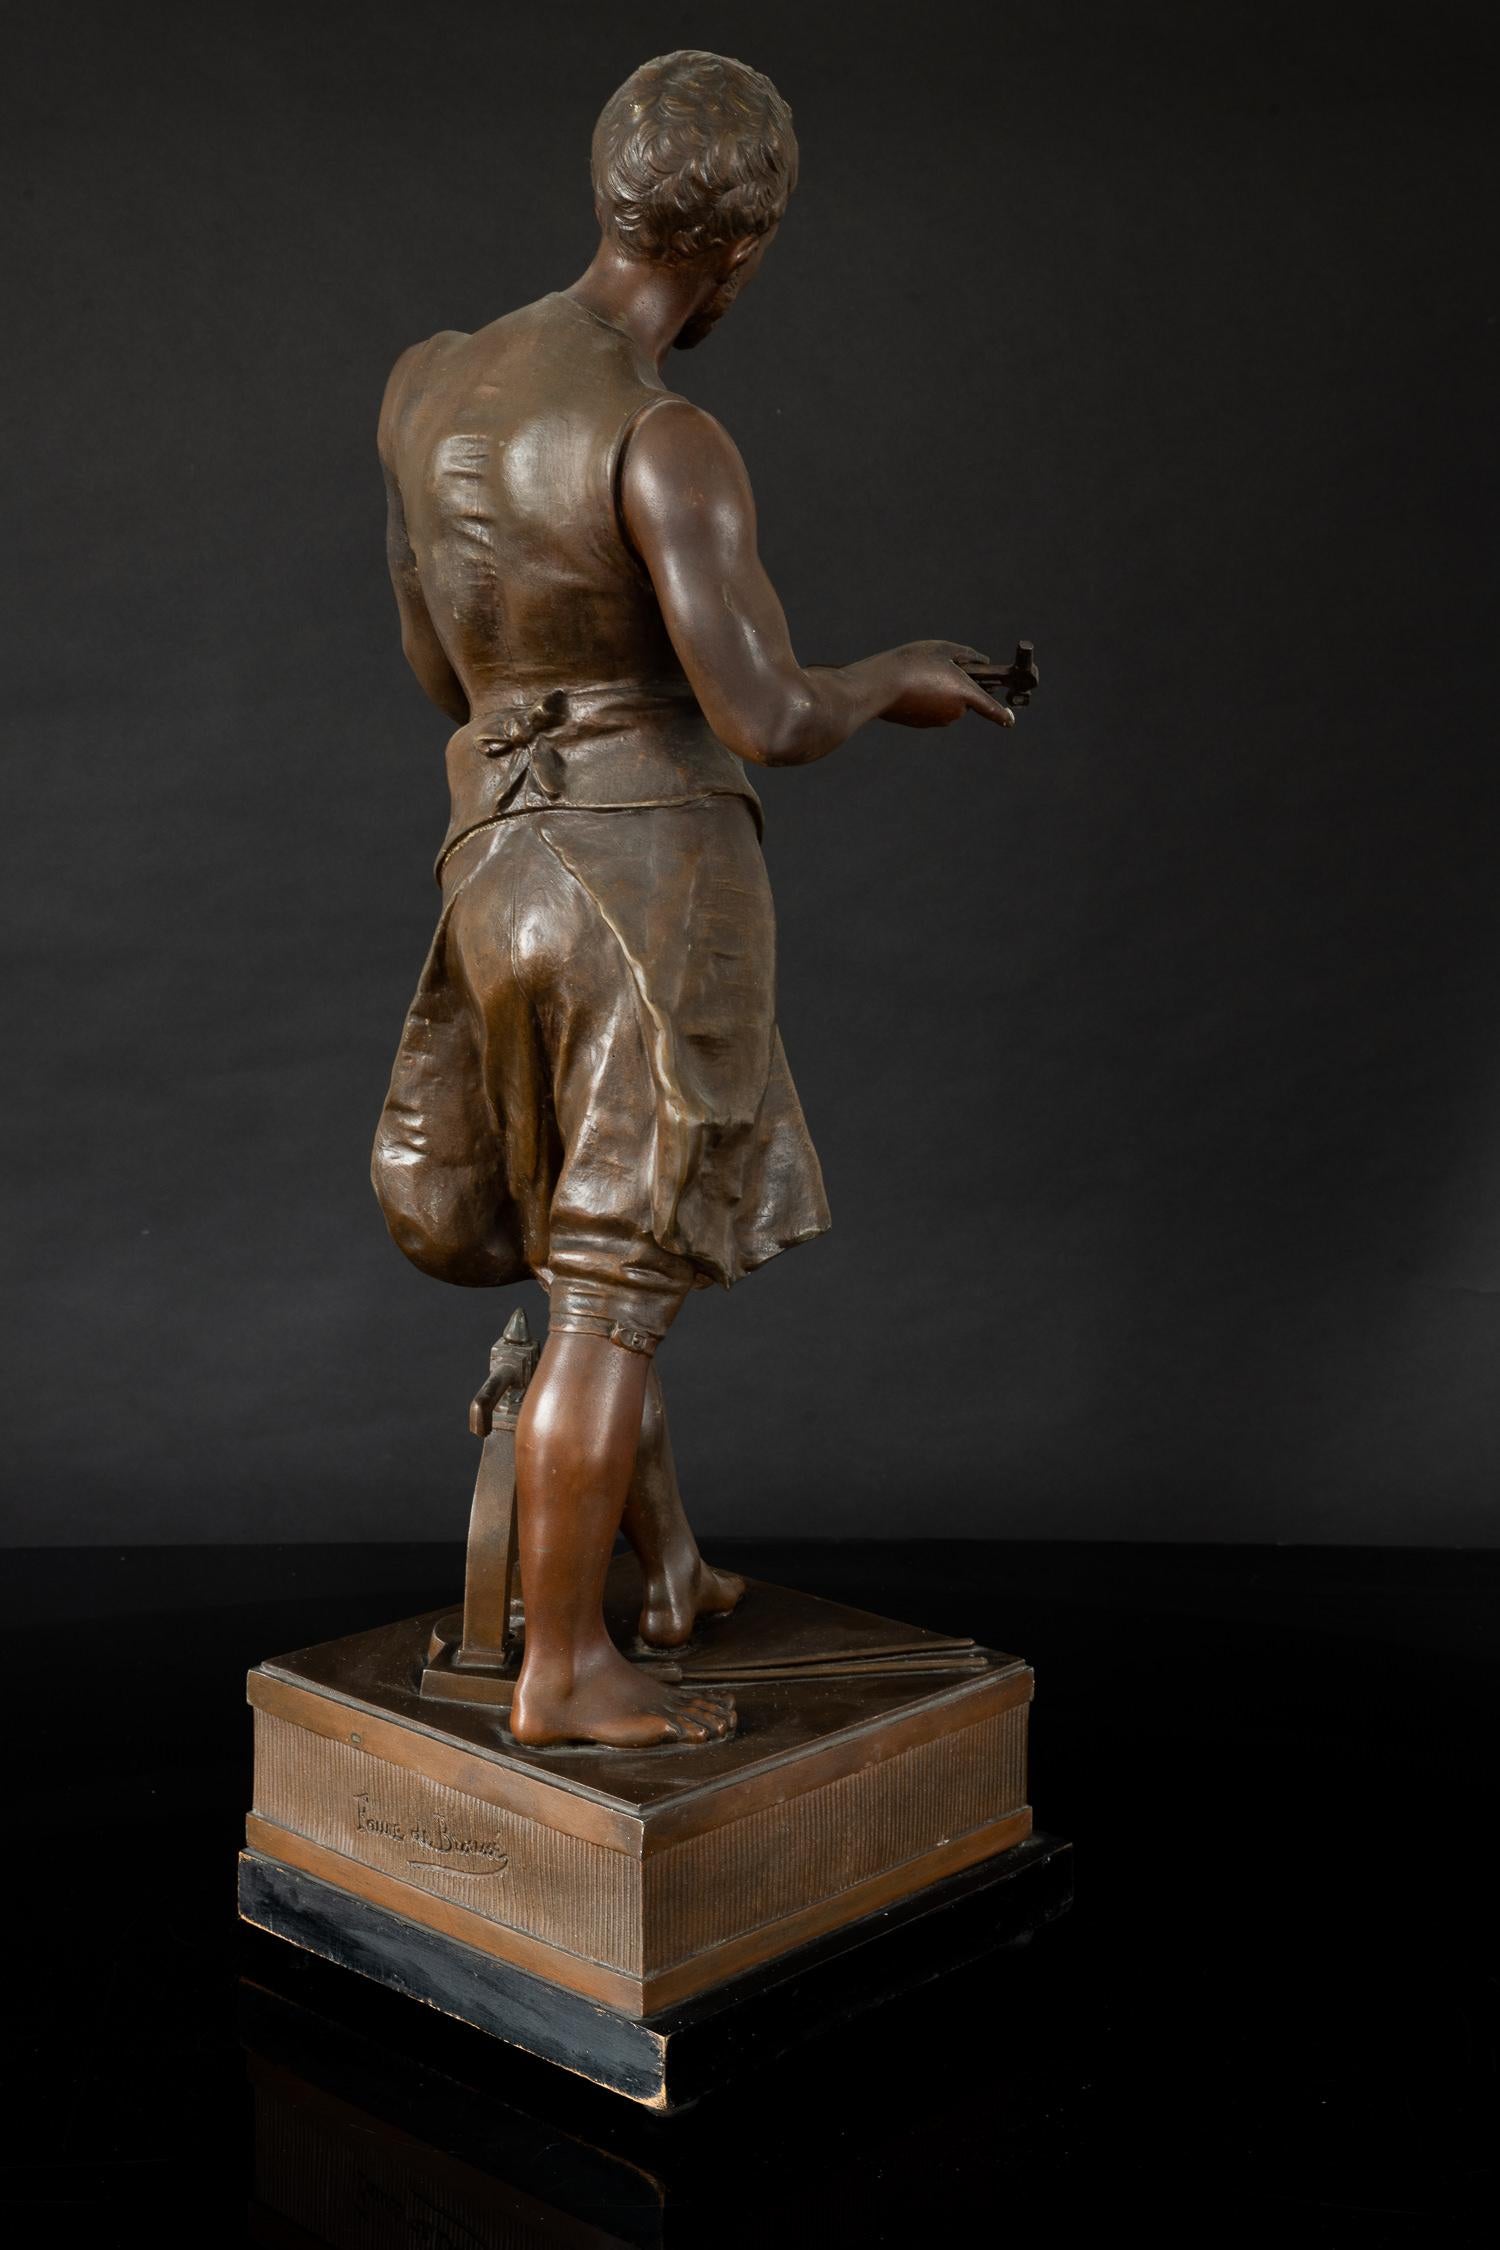 French Metal alloy casted statue representing Labor by Vincent Désiré Faure de Broussé